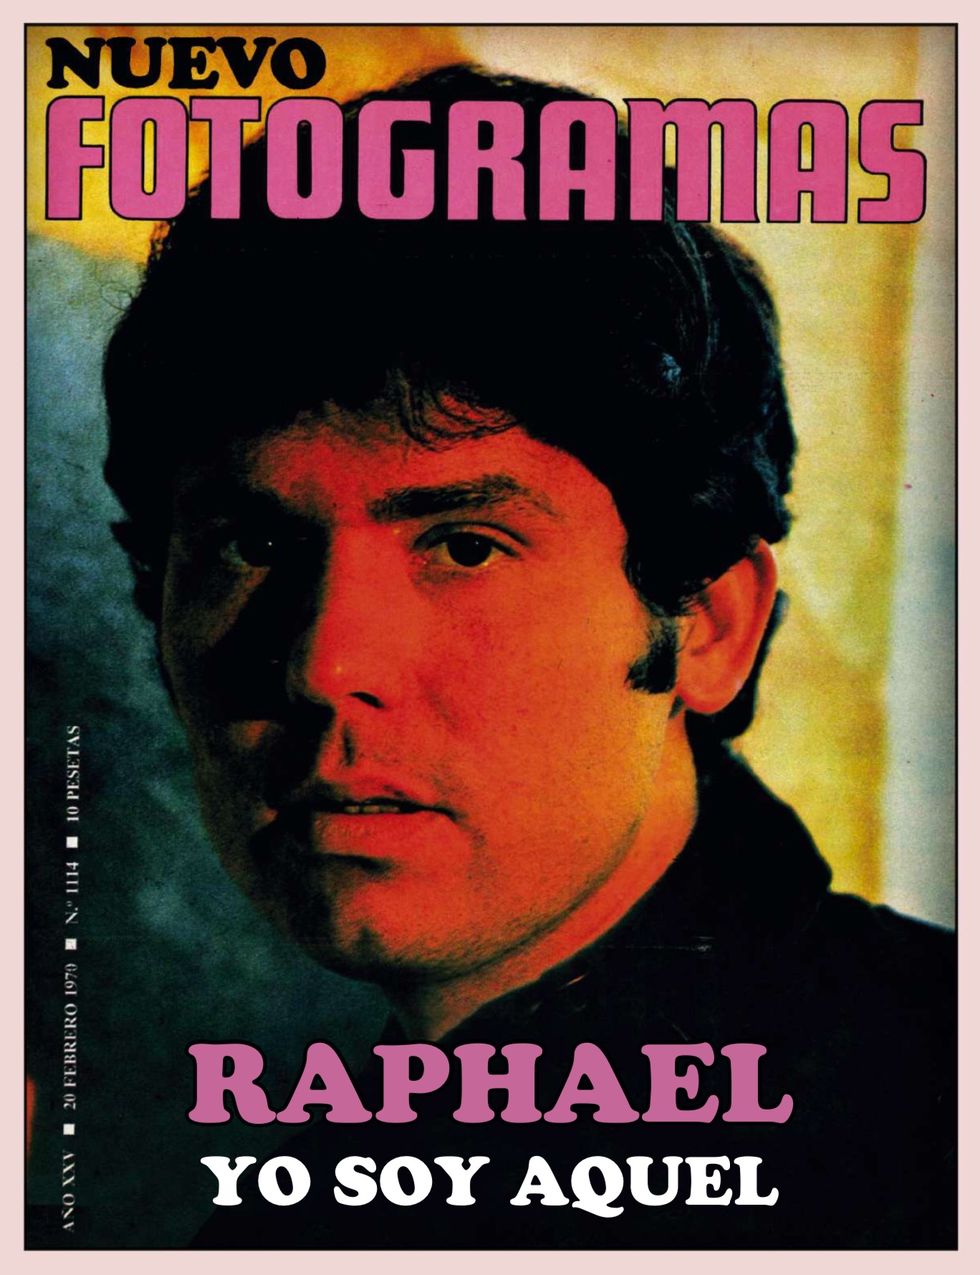 raphael en la portada de fotogramas de febrero de 1970﻿